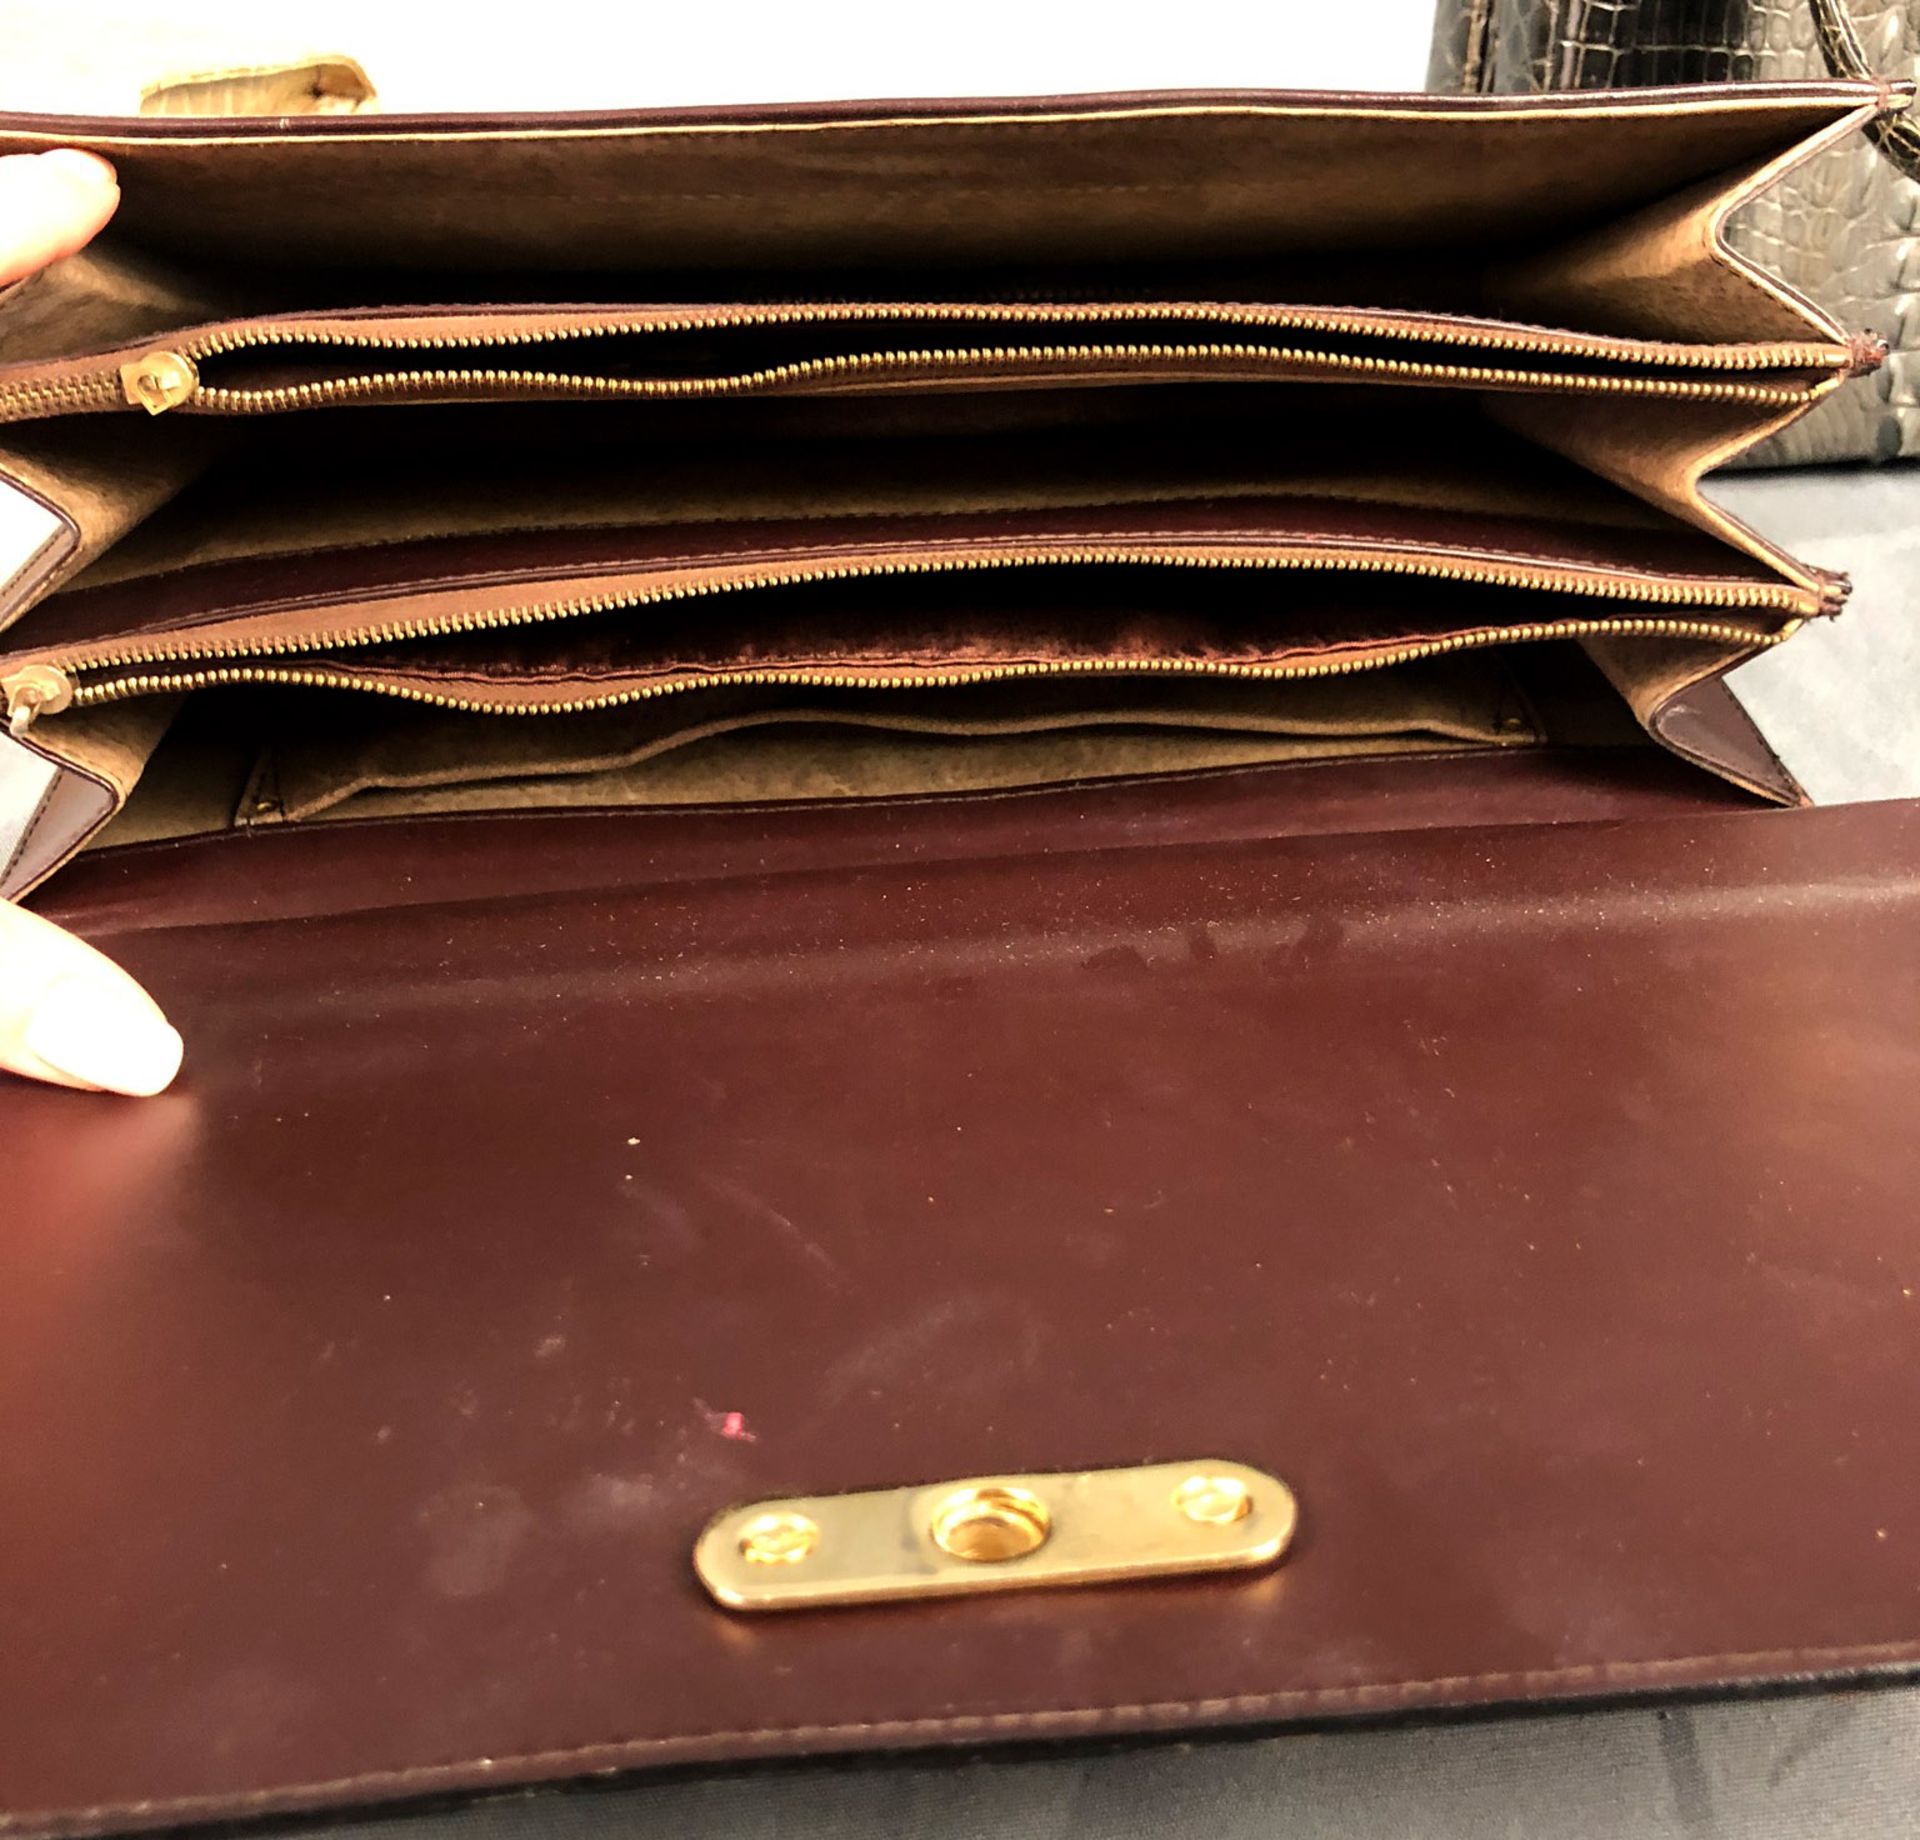 3 Handtaschen Damen. Hochwertig vergoldete Hardware.Bis 31 cm. Aus einem Professoren / Arzthaushalt. - Bild 8 aus 12